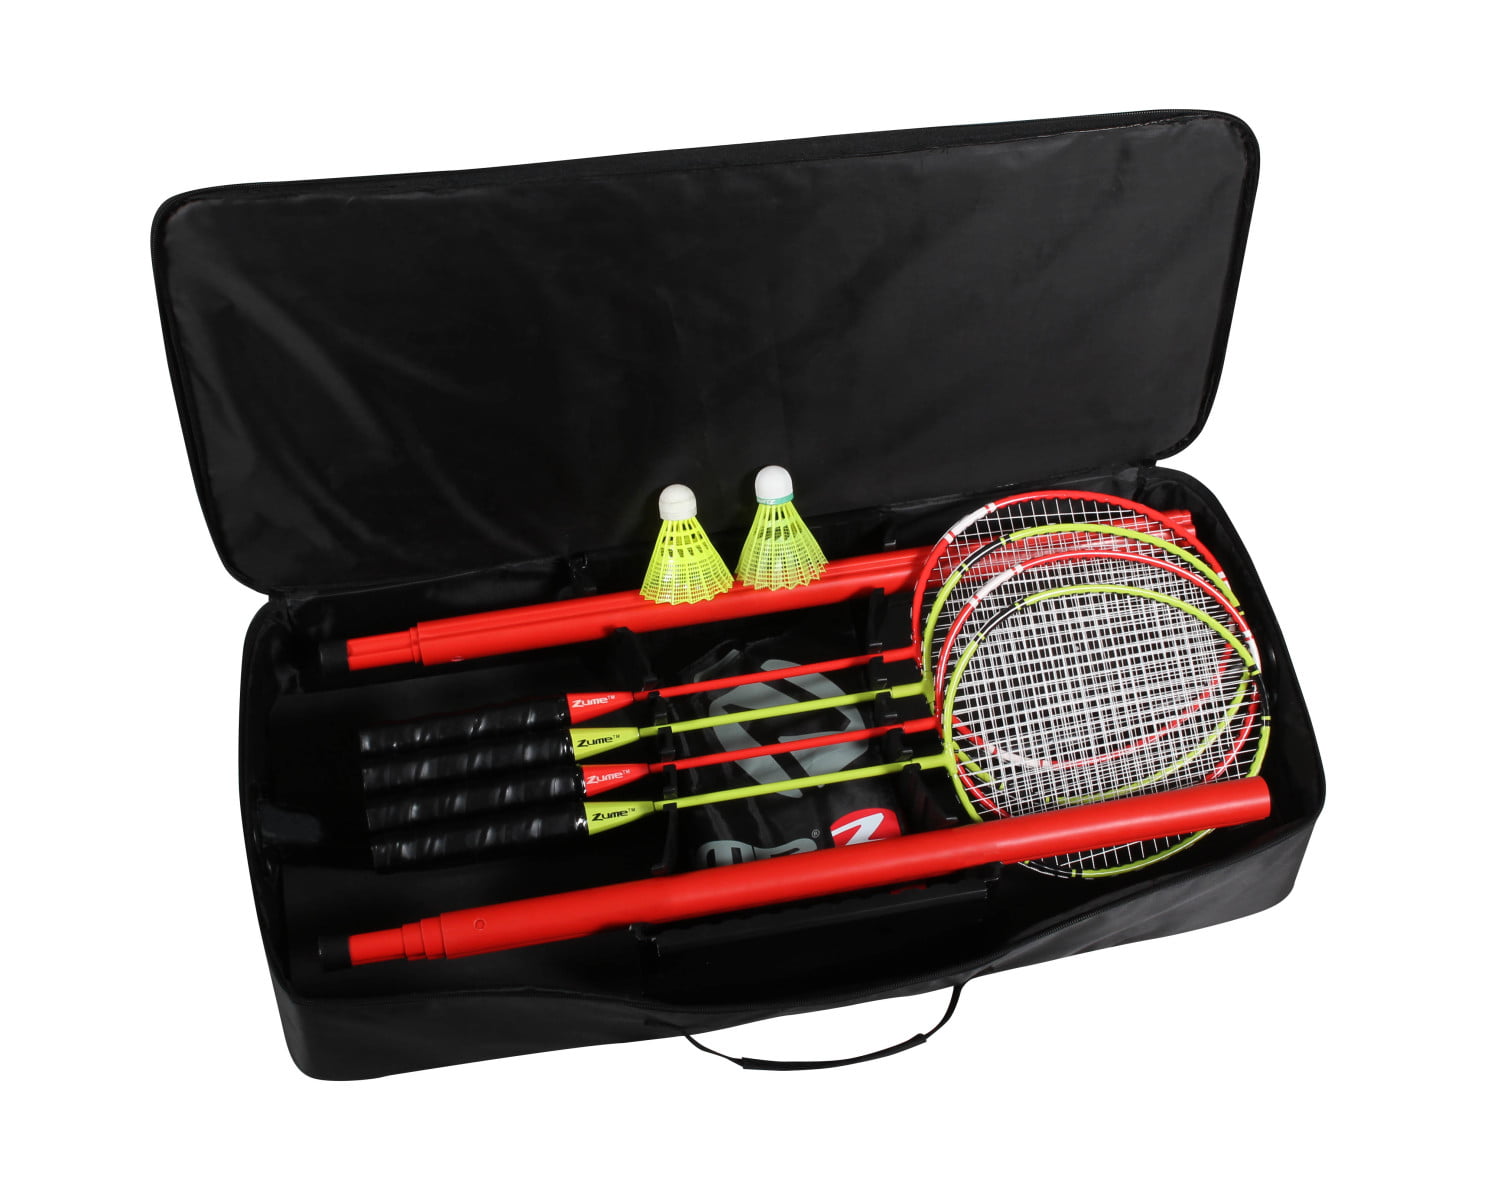 Portable QP Net & Post 2 Shuttles Home Badminton Garden Pack Set 4 Rackets 